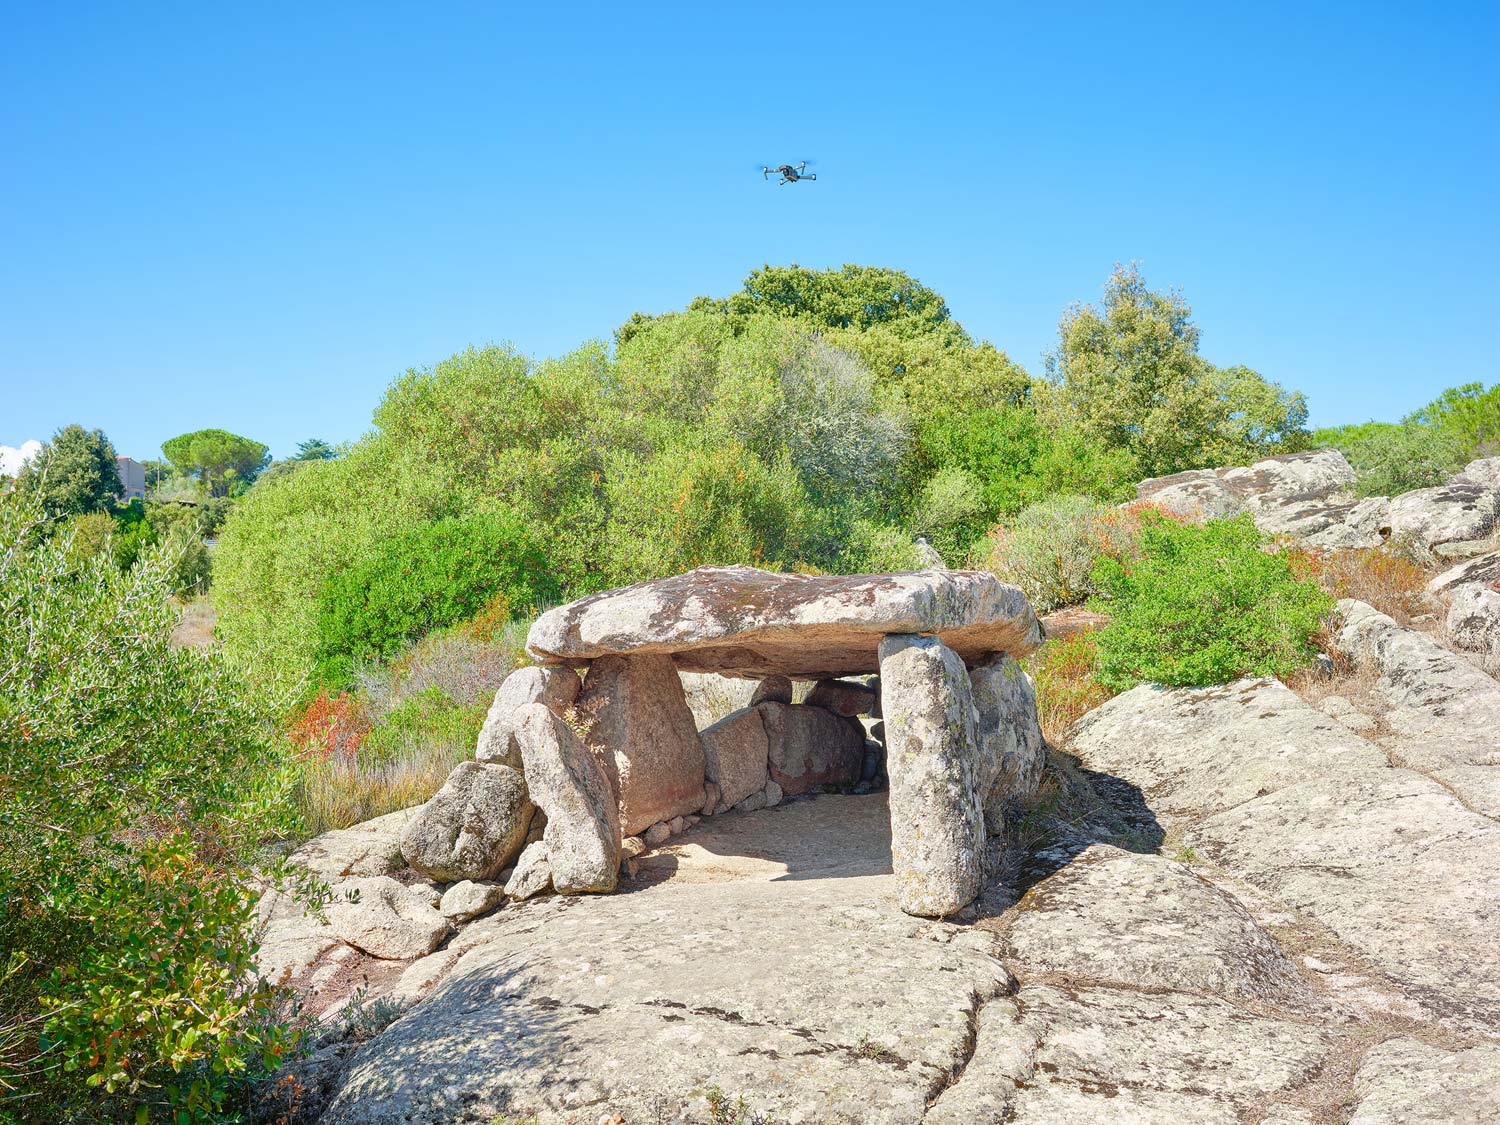 Nuoro, al MAN il grande fotografo Olivo Barbieri porta i menhir e i dolmen della Sardegna